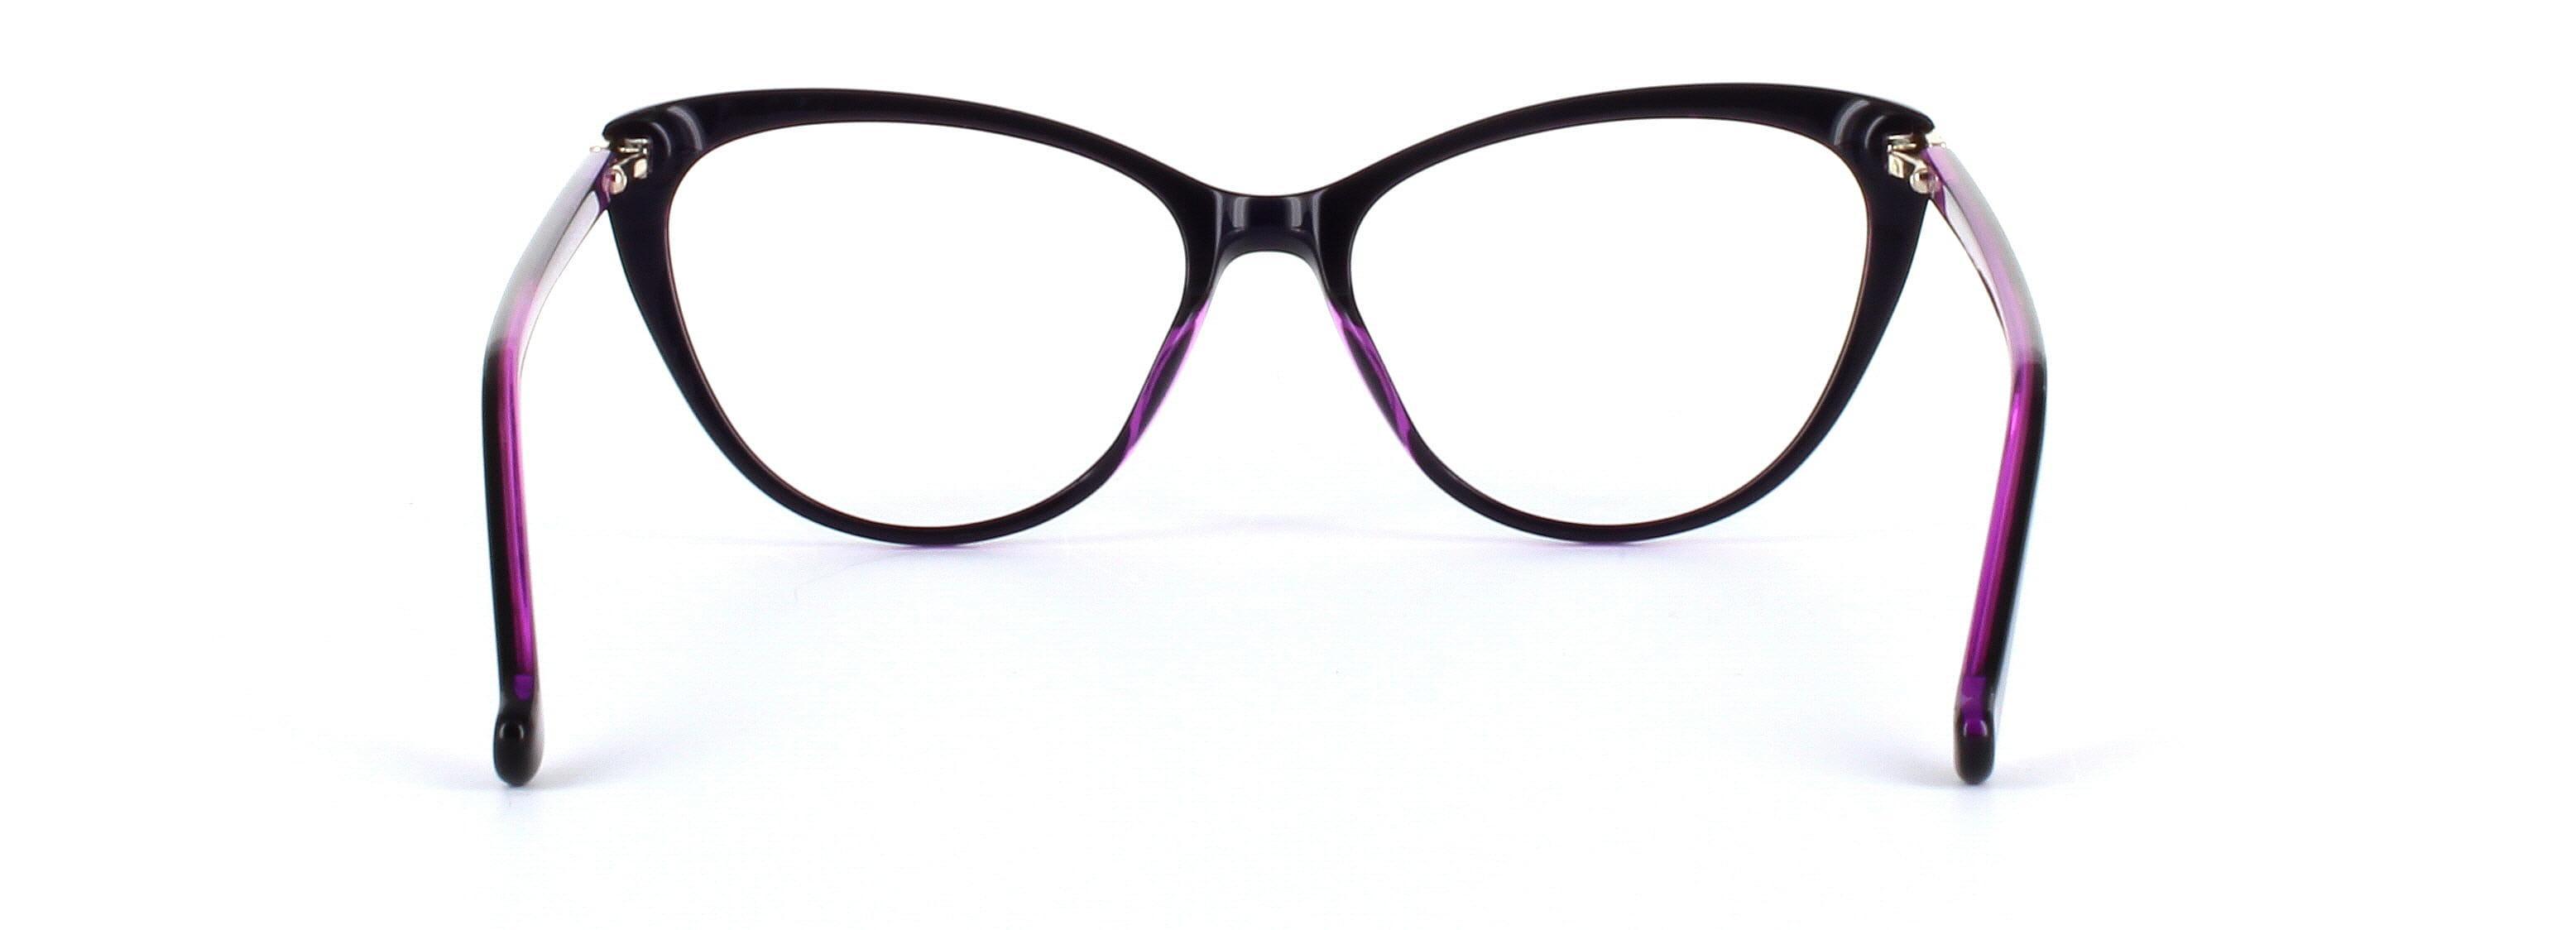 Lydia Purple Full Rim Cat Eye Acetate Glasses - Image View 3